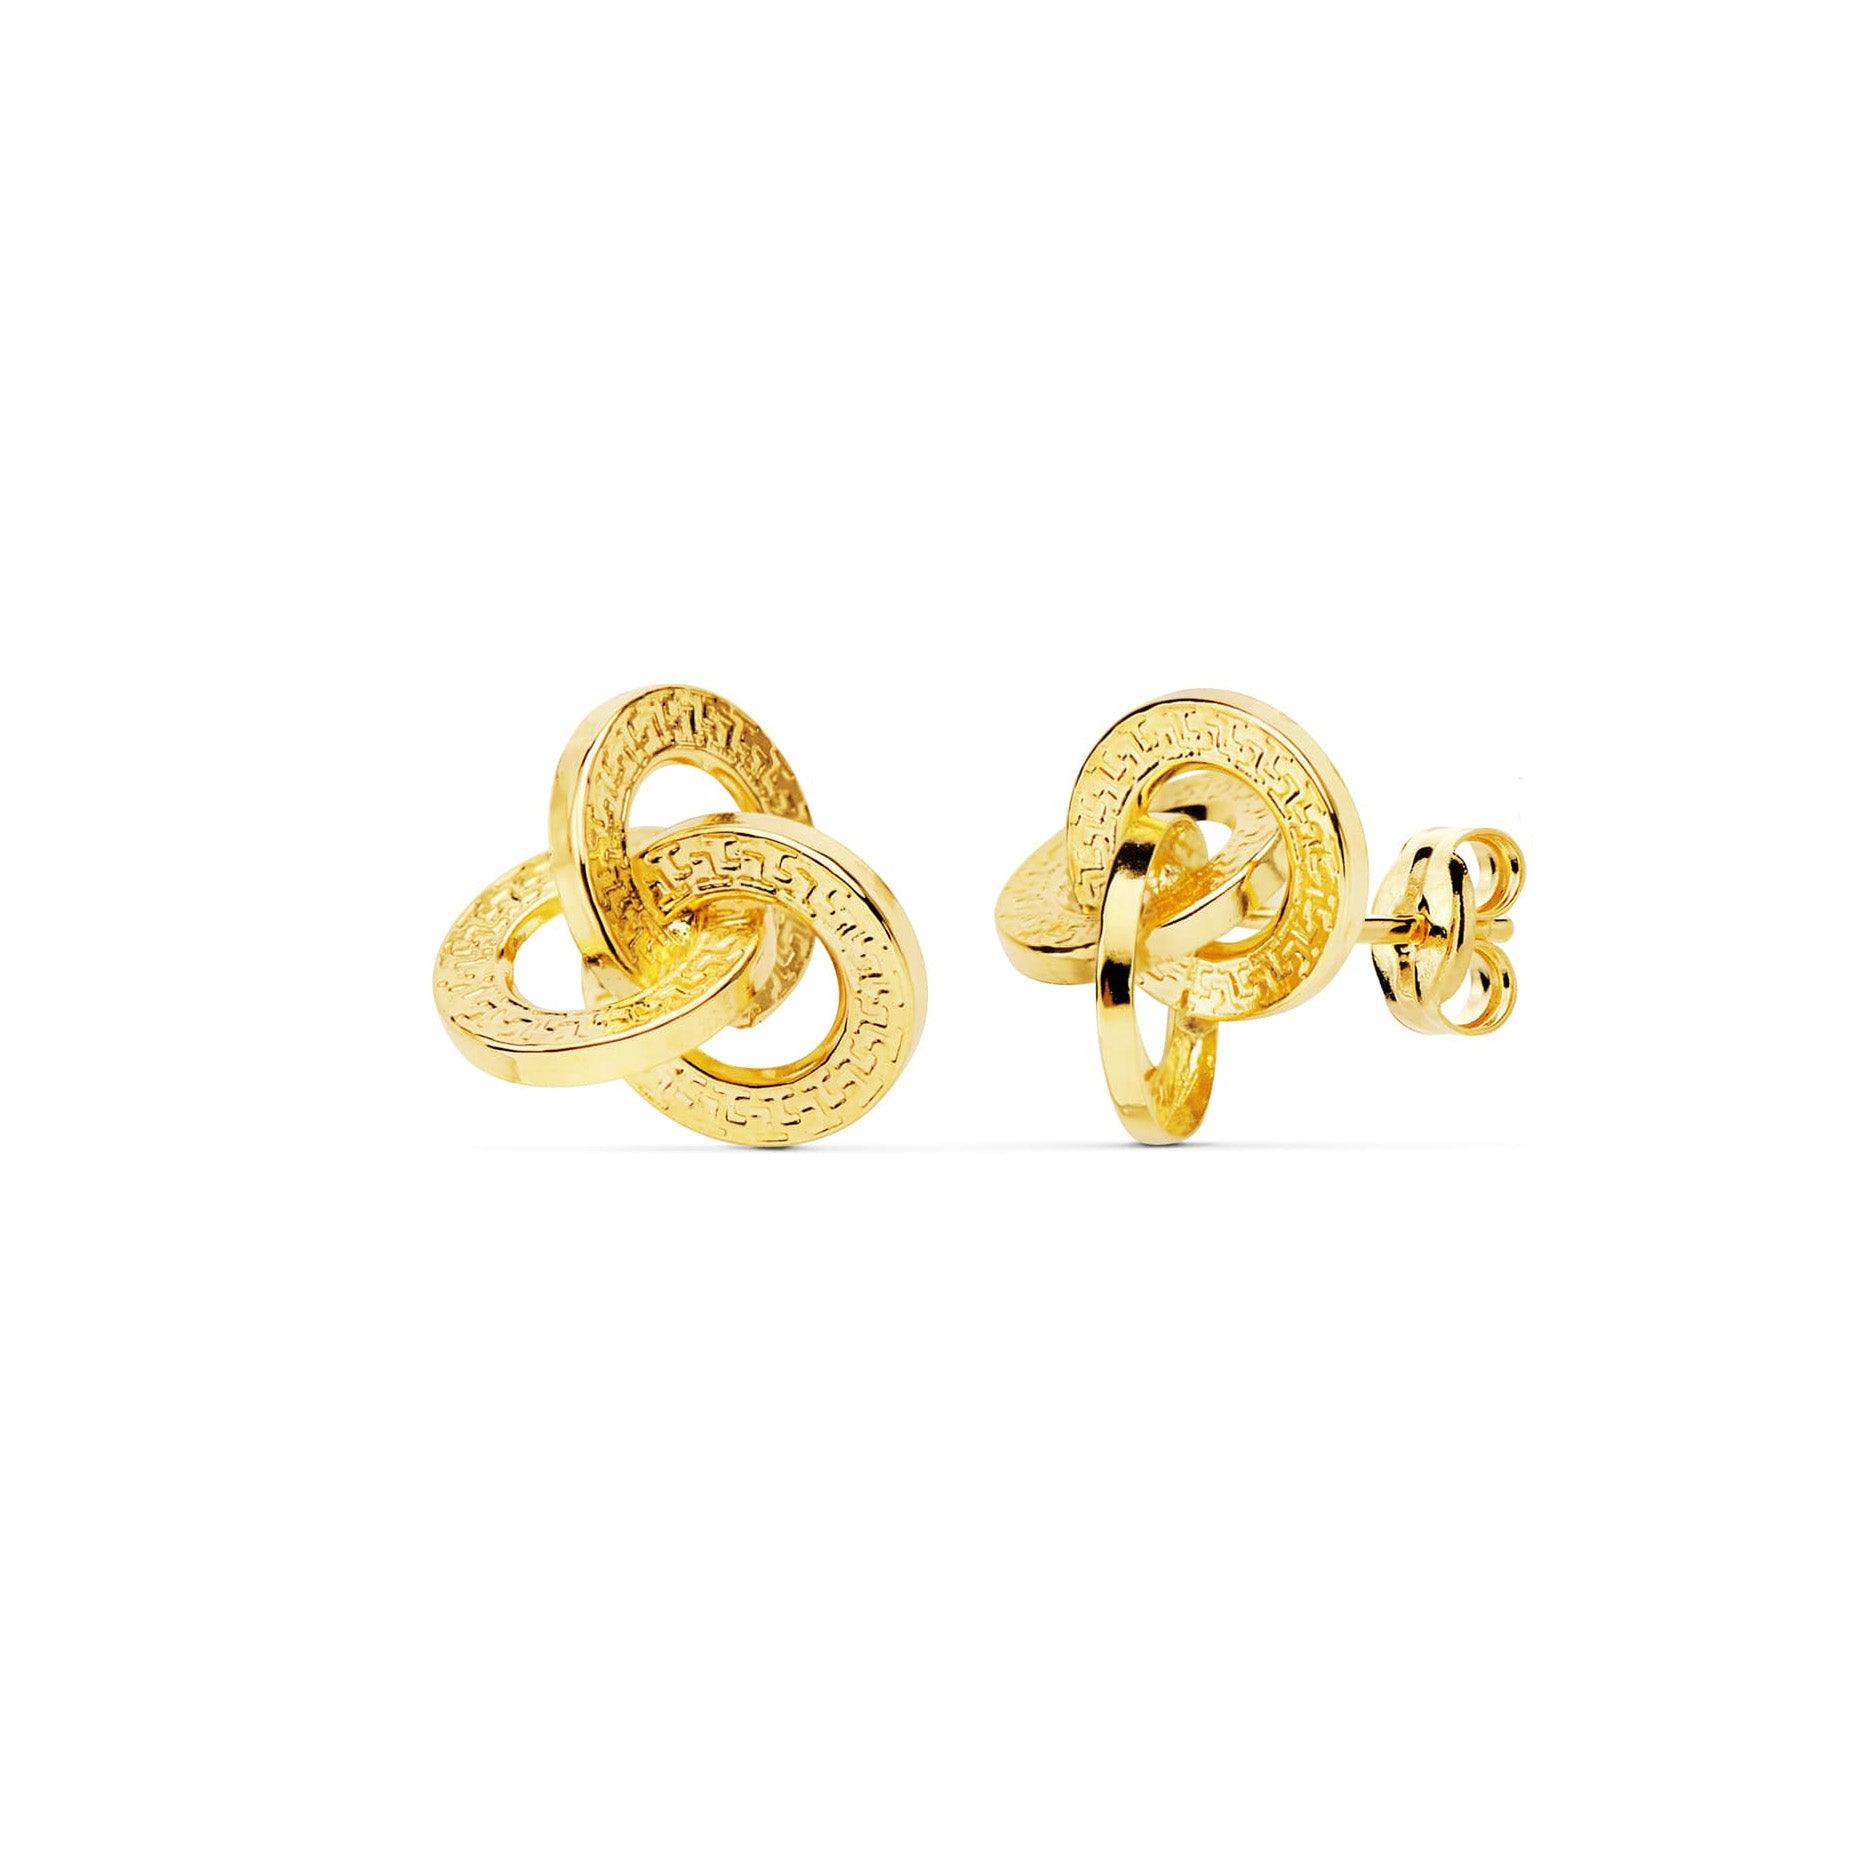 Boucles d'oreilles "Etreinte" en or jaune 18 carats, finition ouvragée - Maison Gabriel